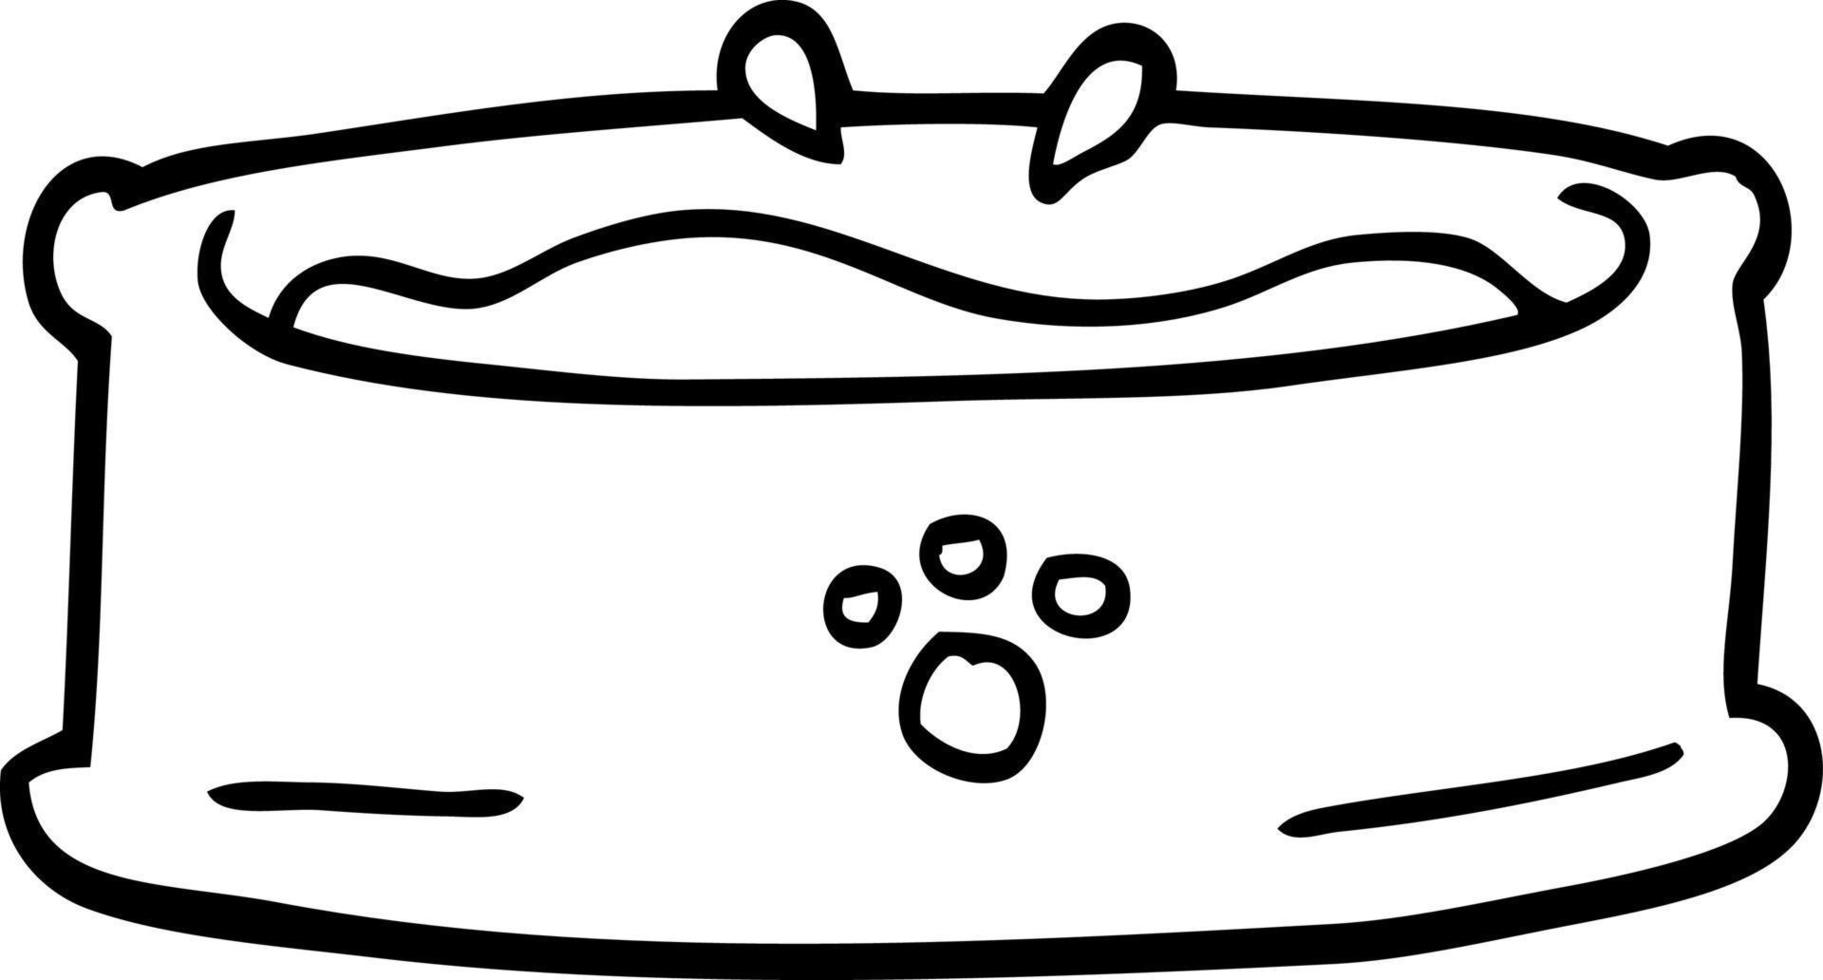 Strichzeichnung Cartoon Pet Bowl vektor